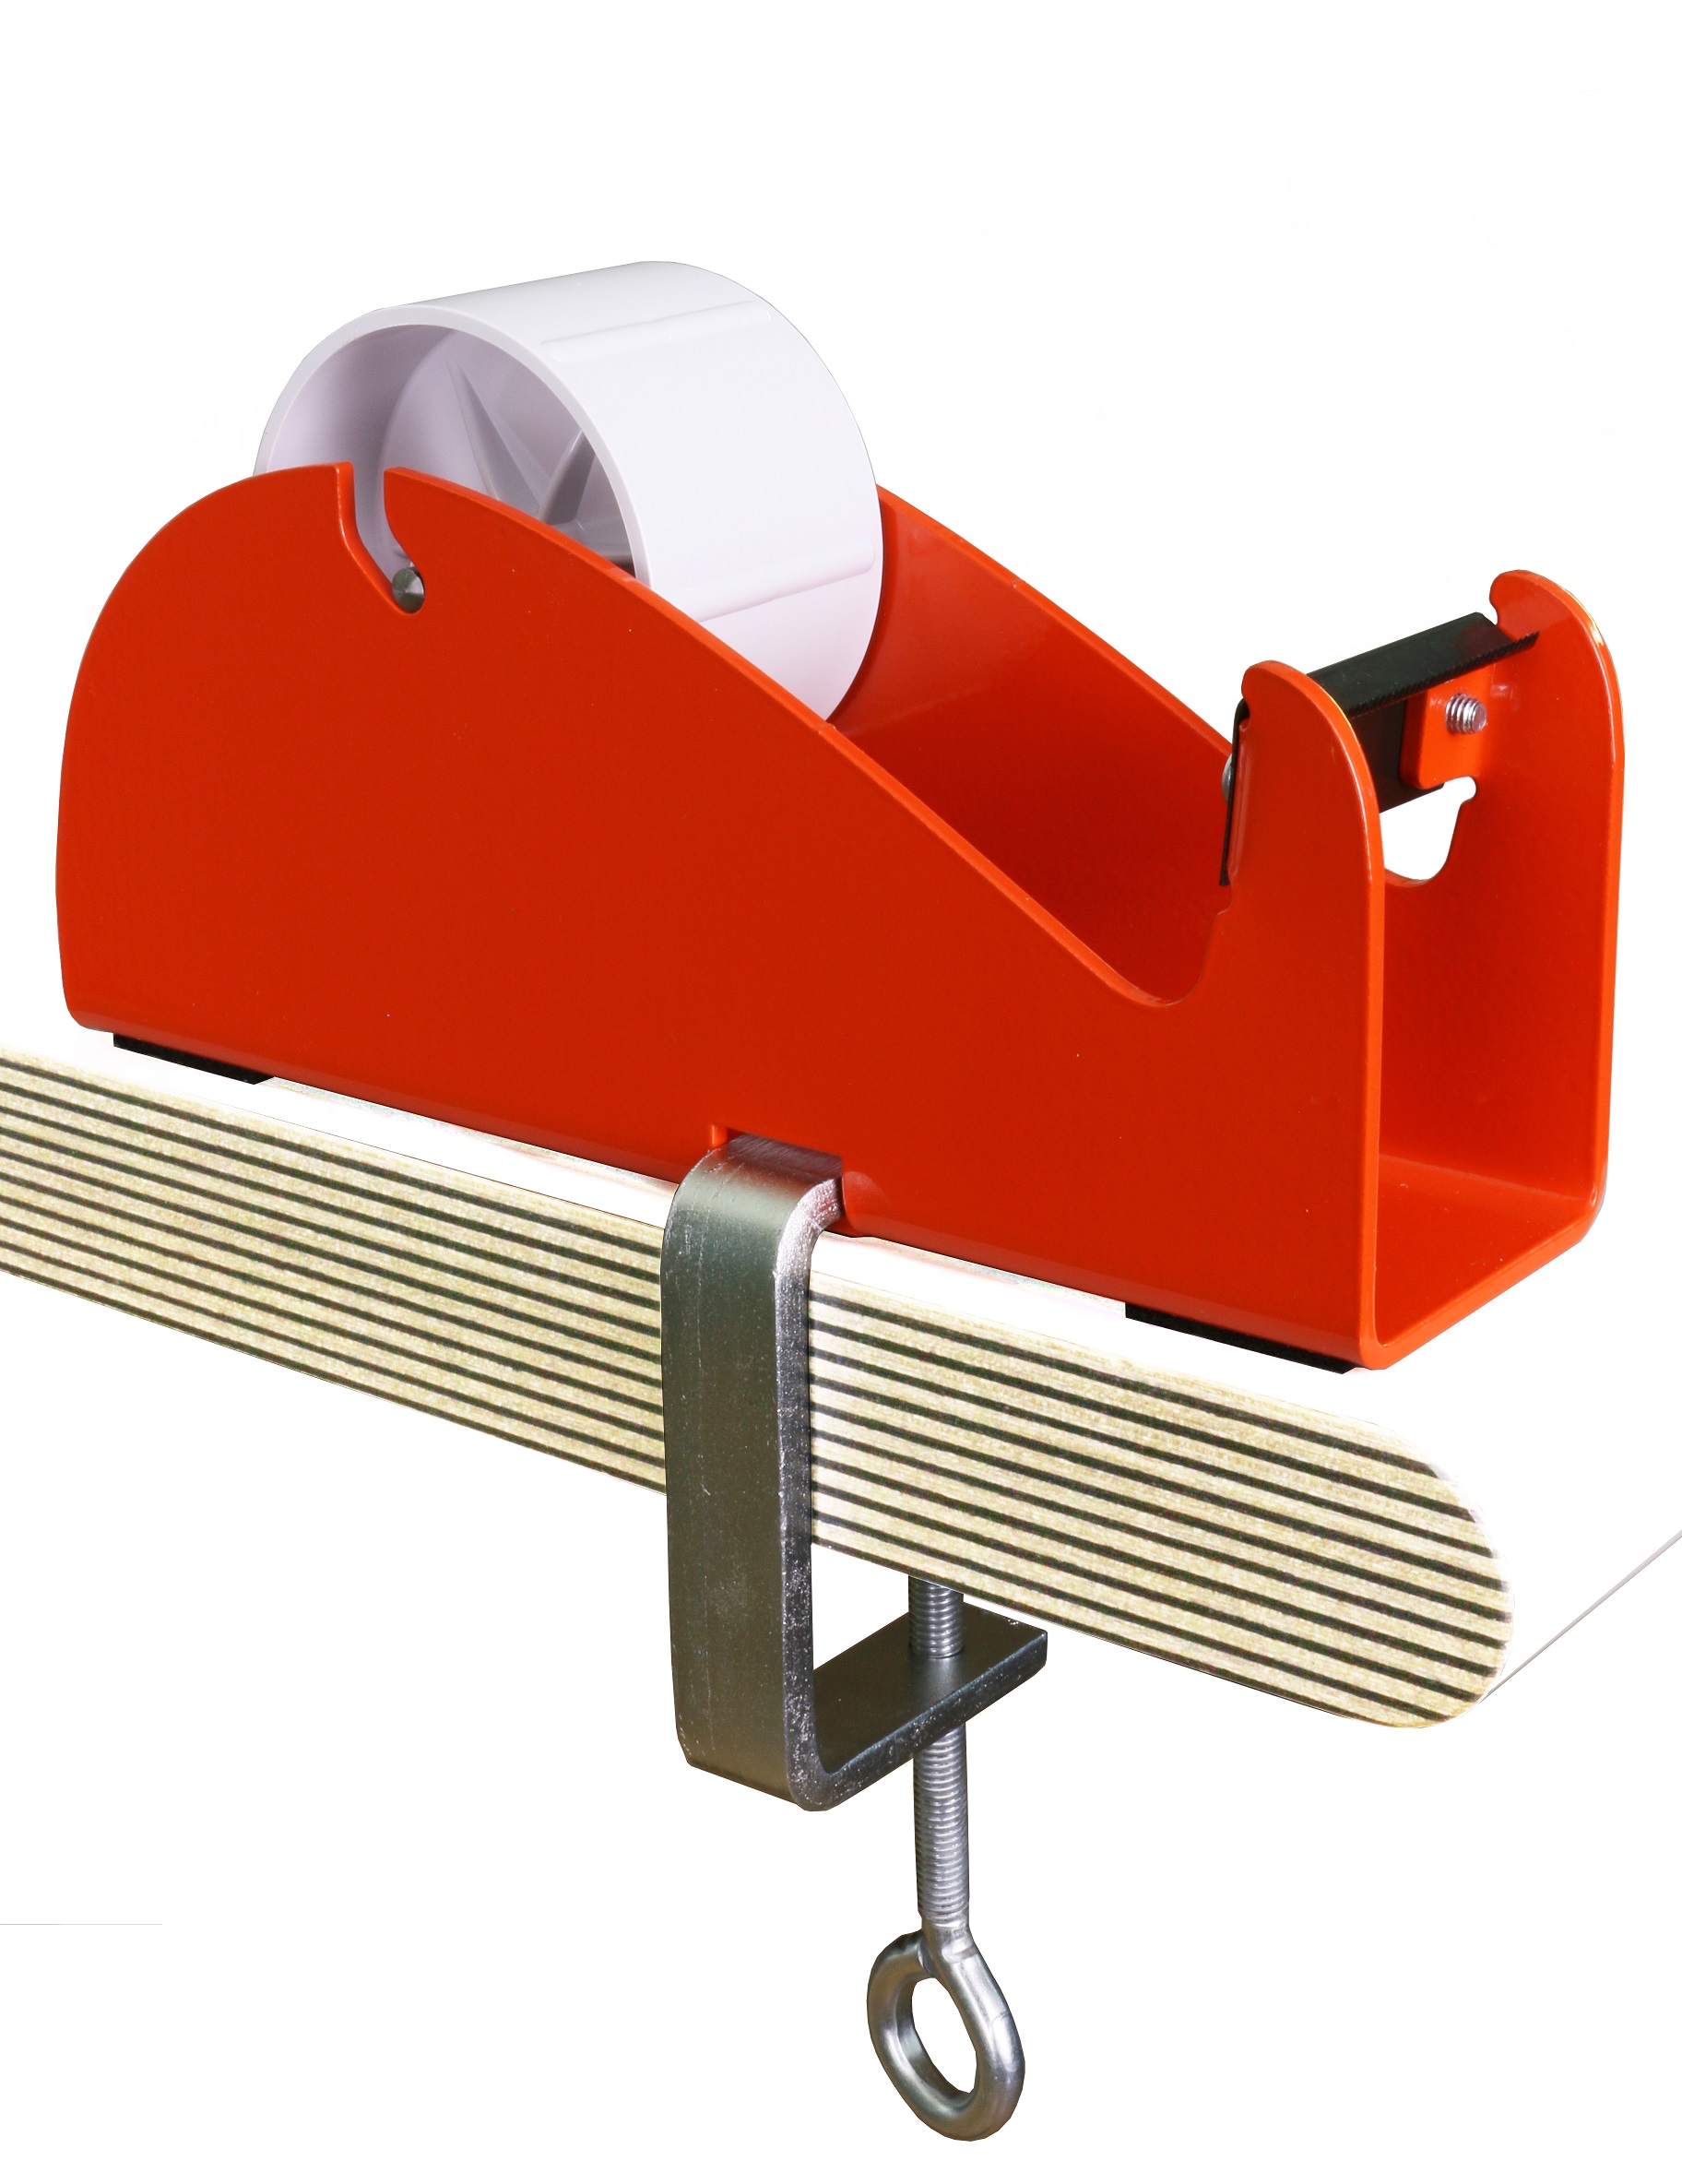 Klebeband-Tischabroller Rot, mit Klemme, 50mm Bandbreite, 145mm Außendurchmesser